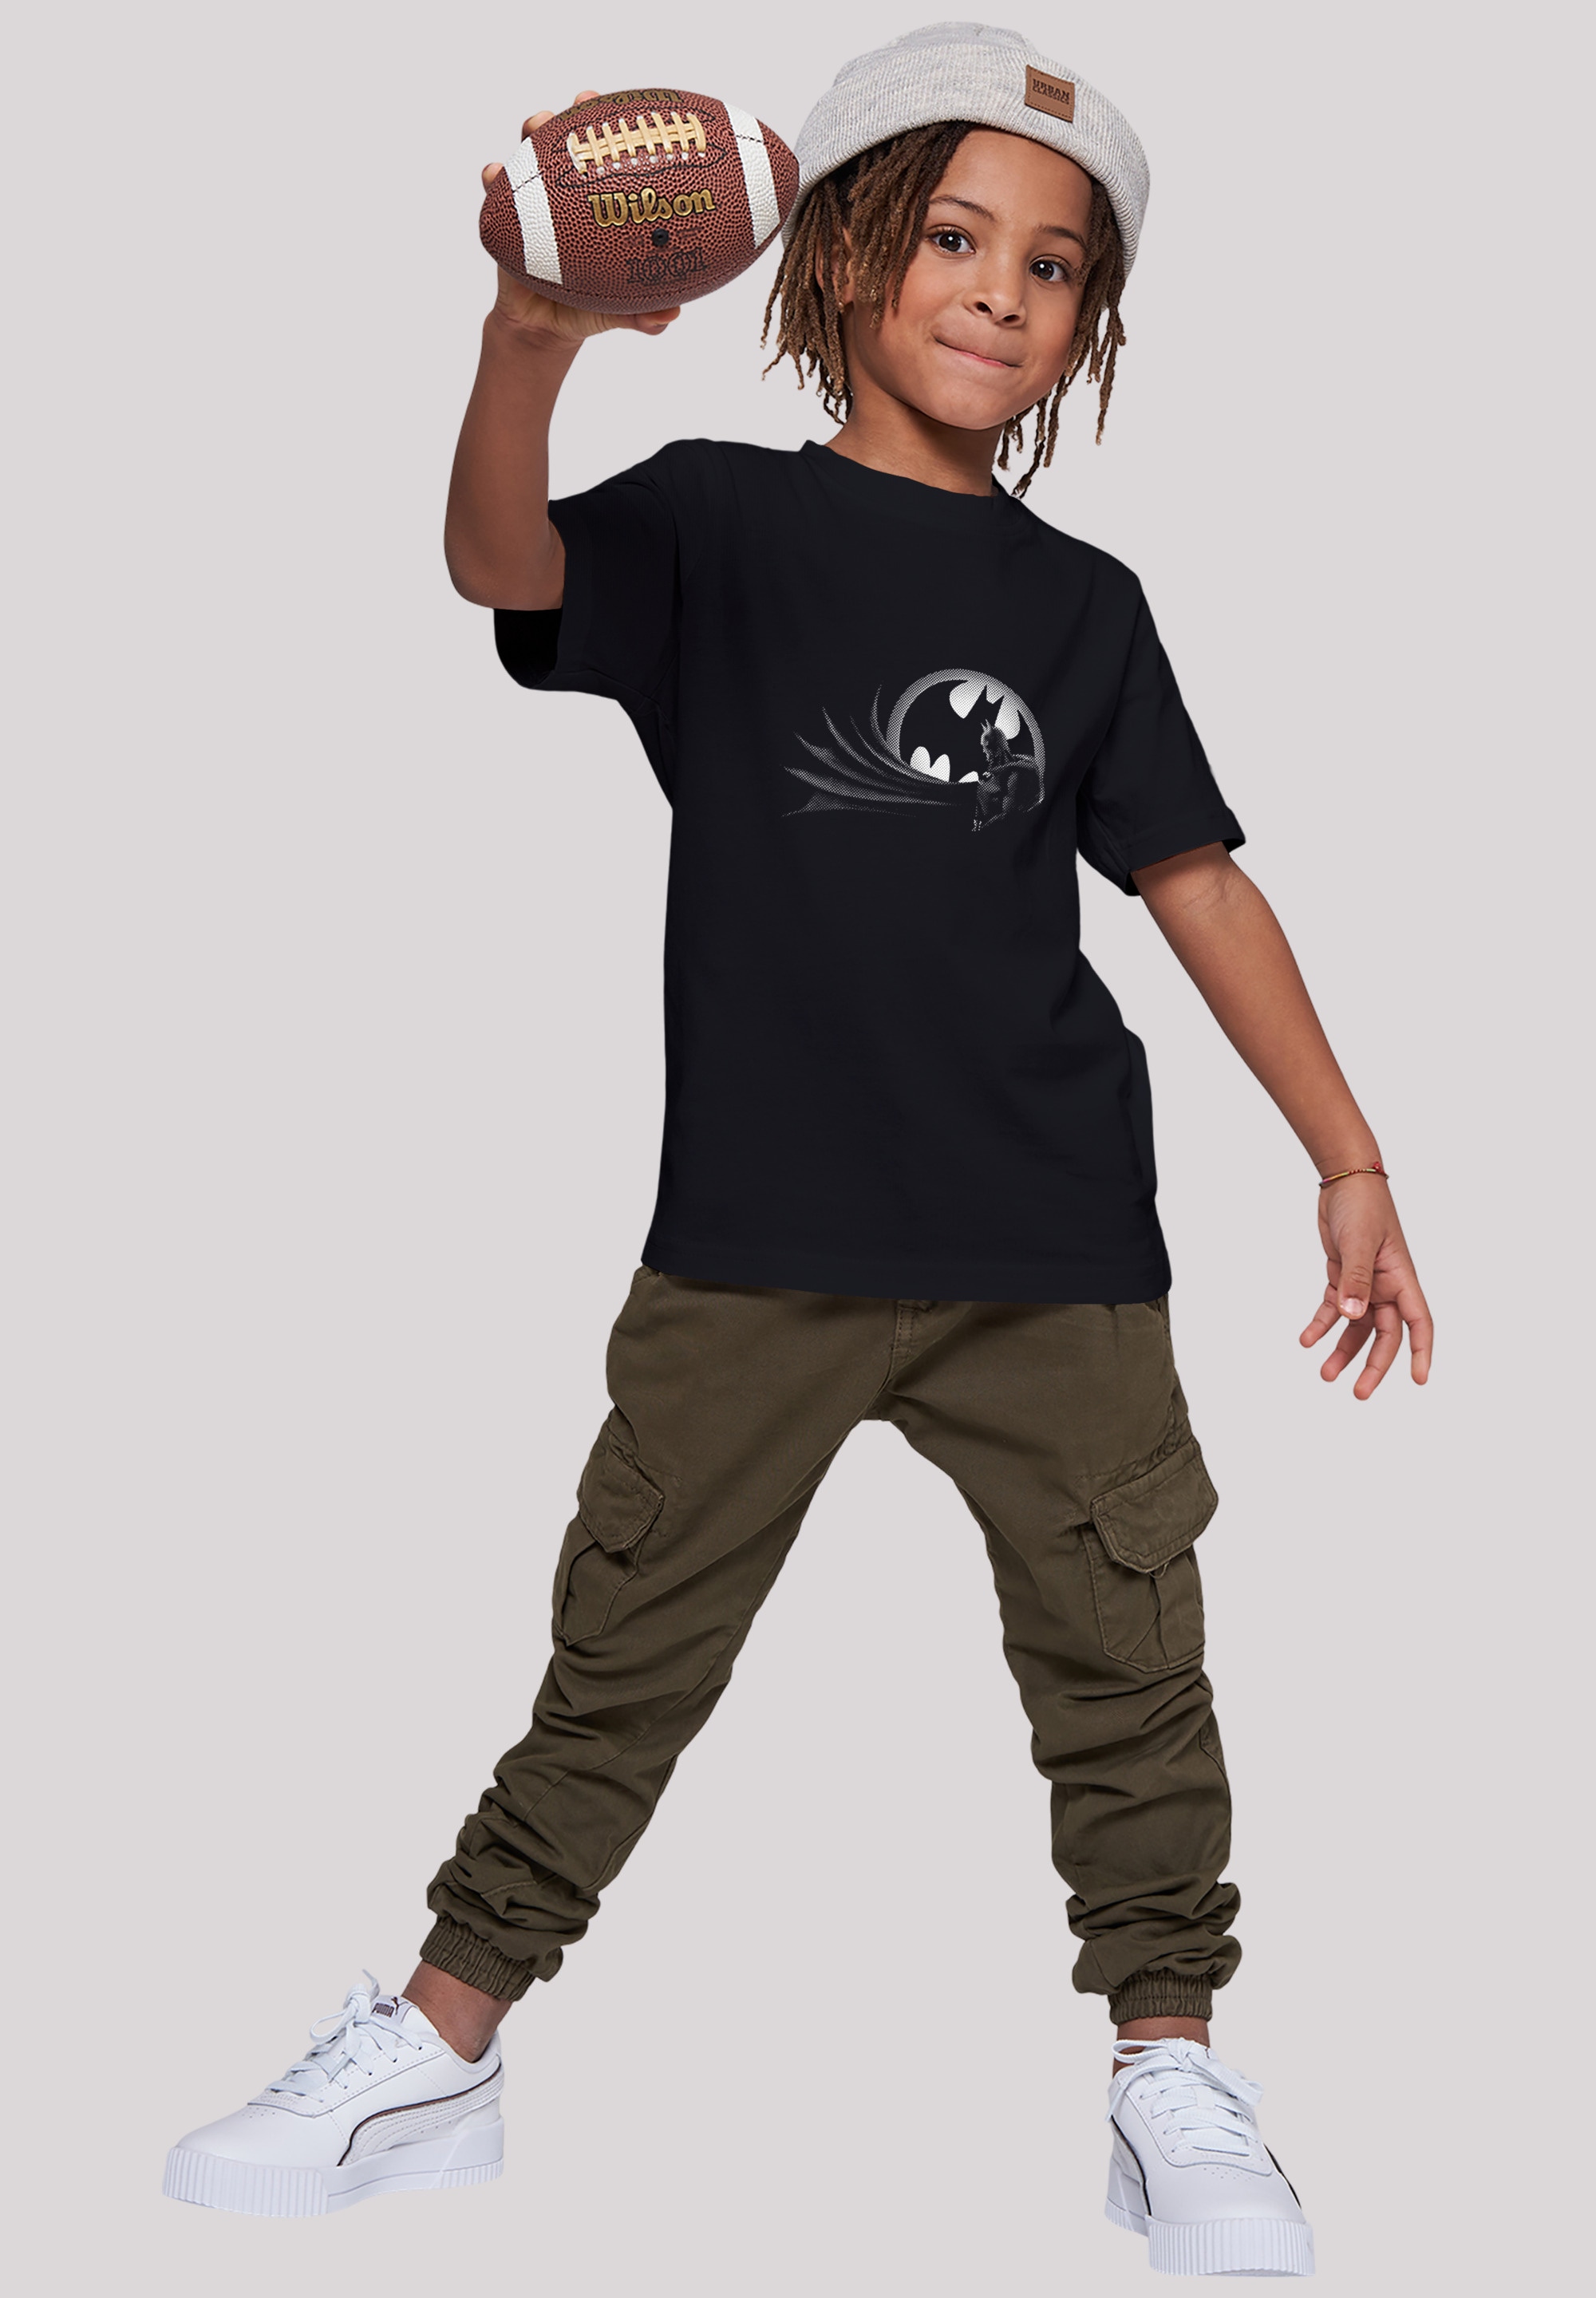 Merch, Comics BAUR Spot Kinder,Premium T-Shirt kaufen | Unisex Jungen,Mädchen,Bedruckt F4NT4STIC »DC Batman Logo«,